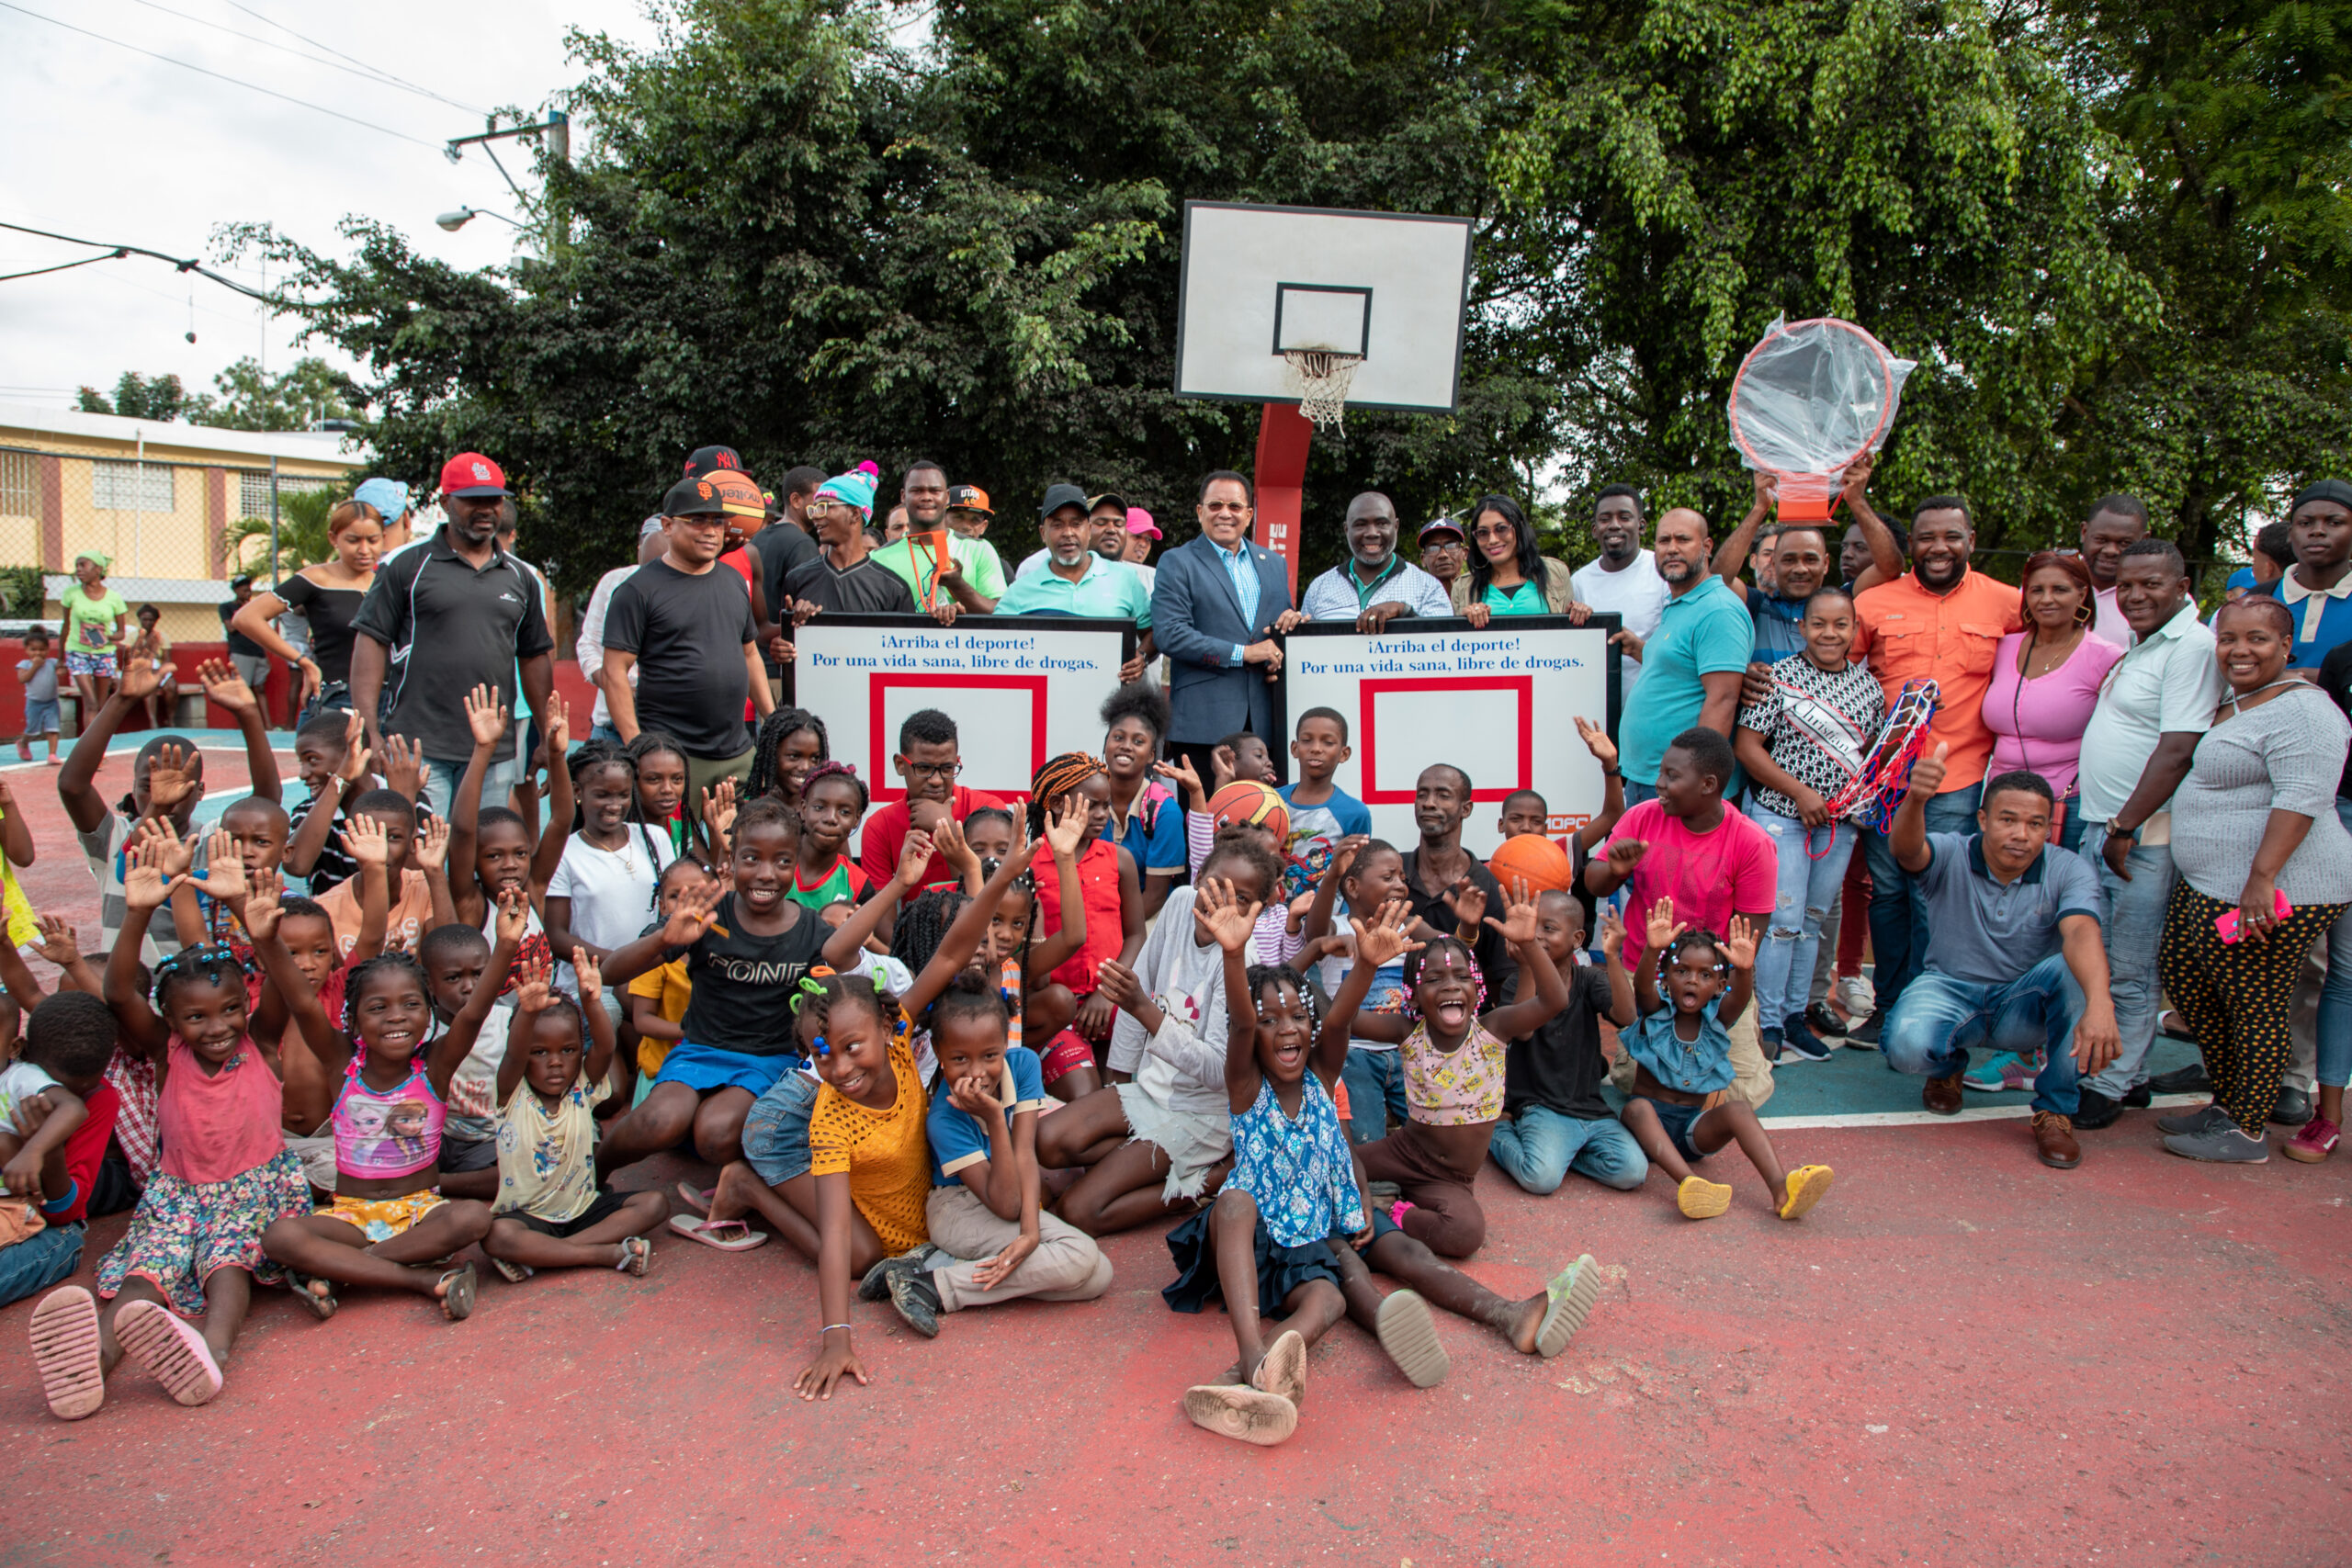 CND y MOPC entregan tableros de baloncesto y utilería deportiva a la comunidad de Palmarejos